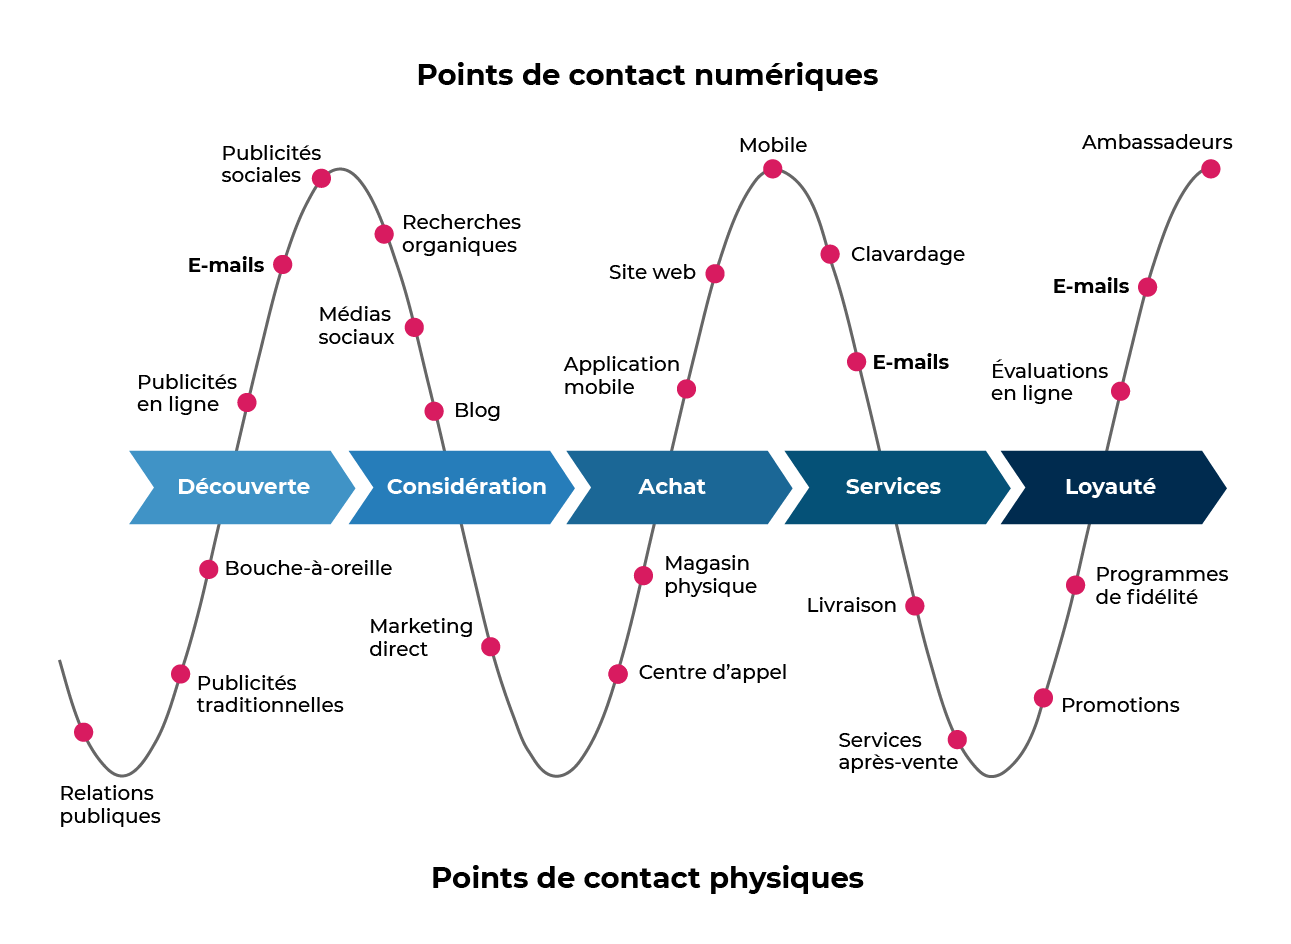 Timeline répertoriant les différents points de contact numériques et physiques selon les différentes phases du parcours : découverte, considération, achat, services, loyauté.